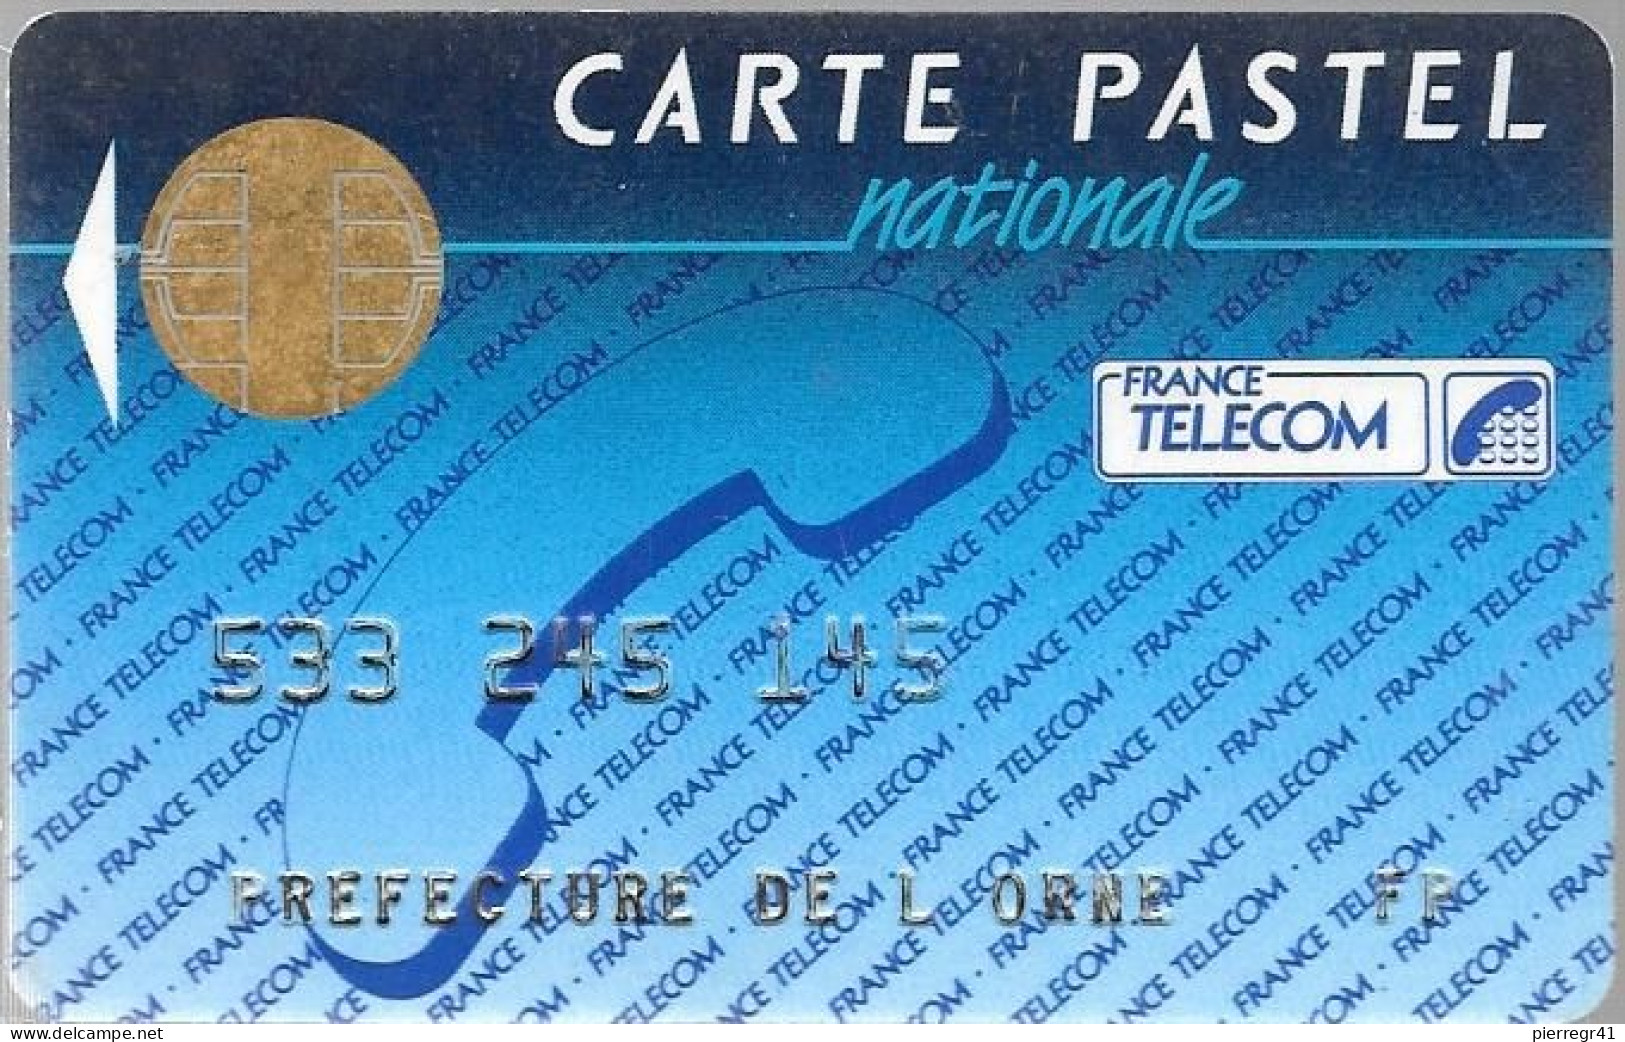 CARTE²° PUCE-BULL F-FRANCE TELECOM-PASTEL-NATIONALE- V°LE 10 / En Bas France Telecom Segur-75700-Paris-TBE -  Cartes Pastel   